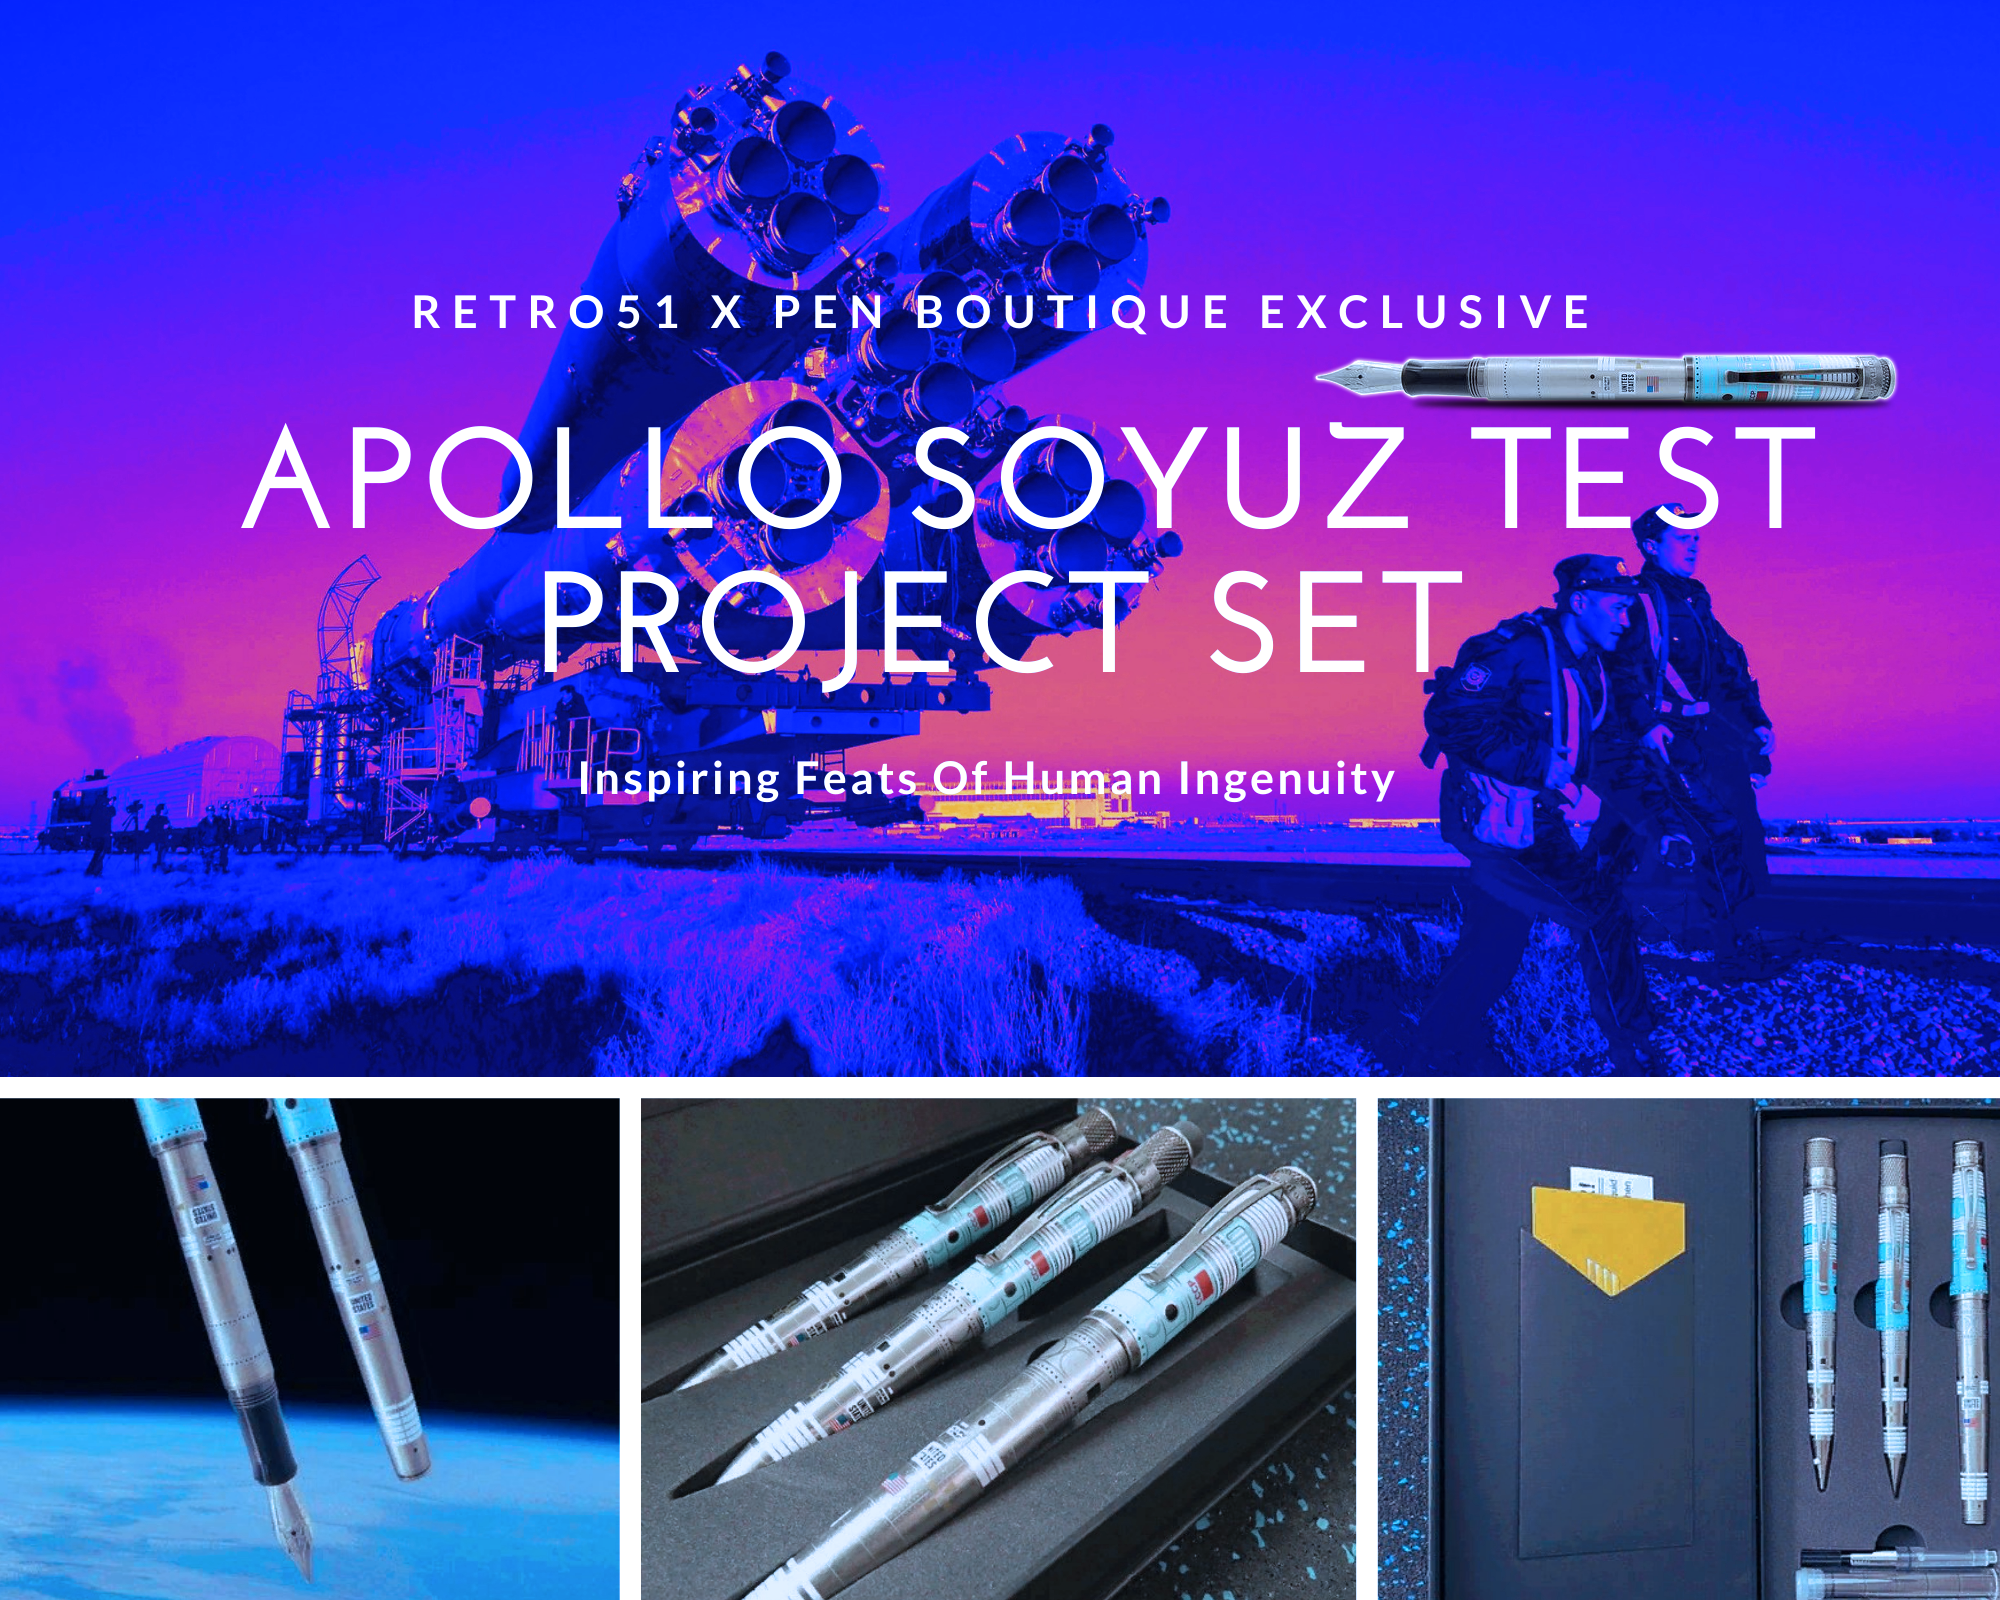 Retro51 x Pen Boutique Exclusive Apollo Soyuz Test Project Set